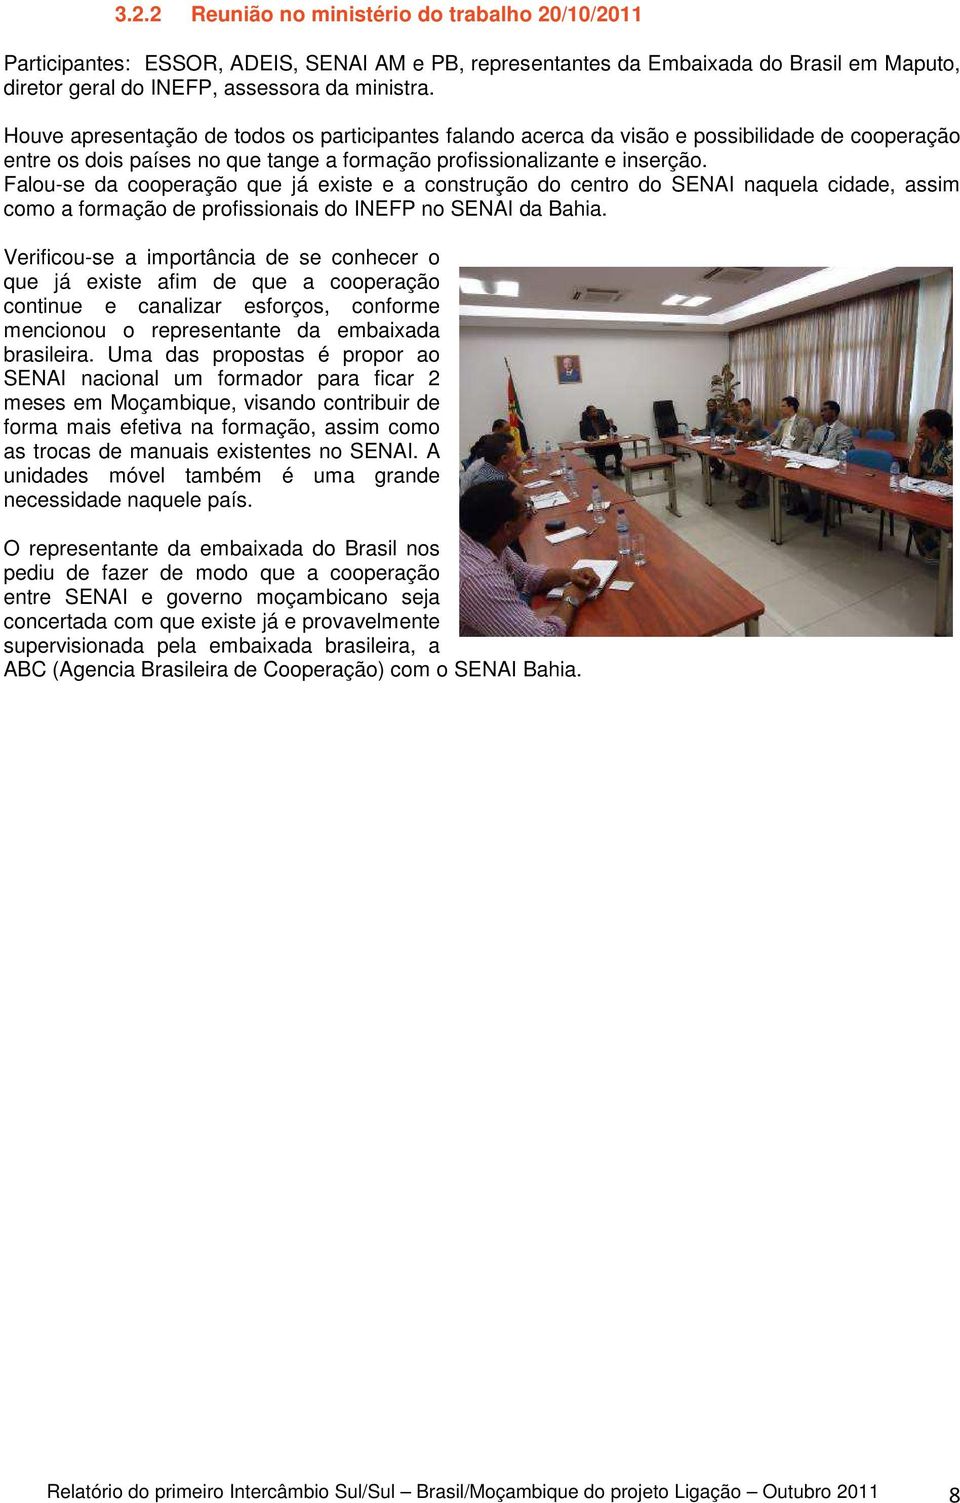 Falou-se da cooperação que já existe e a construção do centro do SENAI naquela cidade, assim como a formação de profissionais do INEFP no SENAI da Bahia.